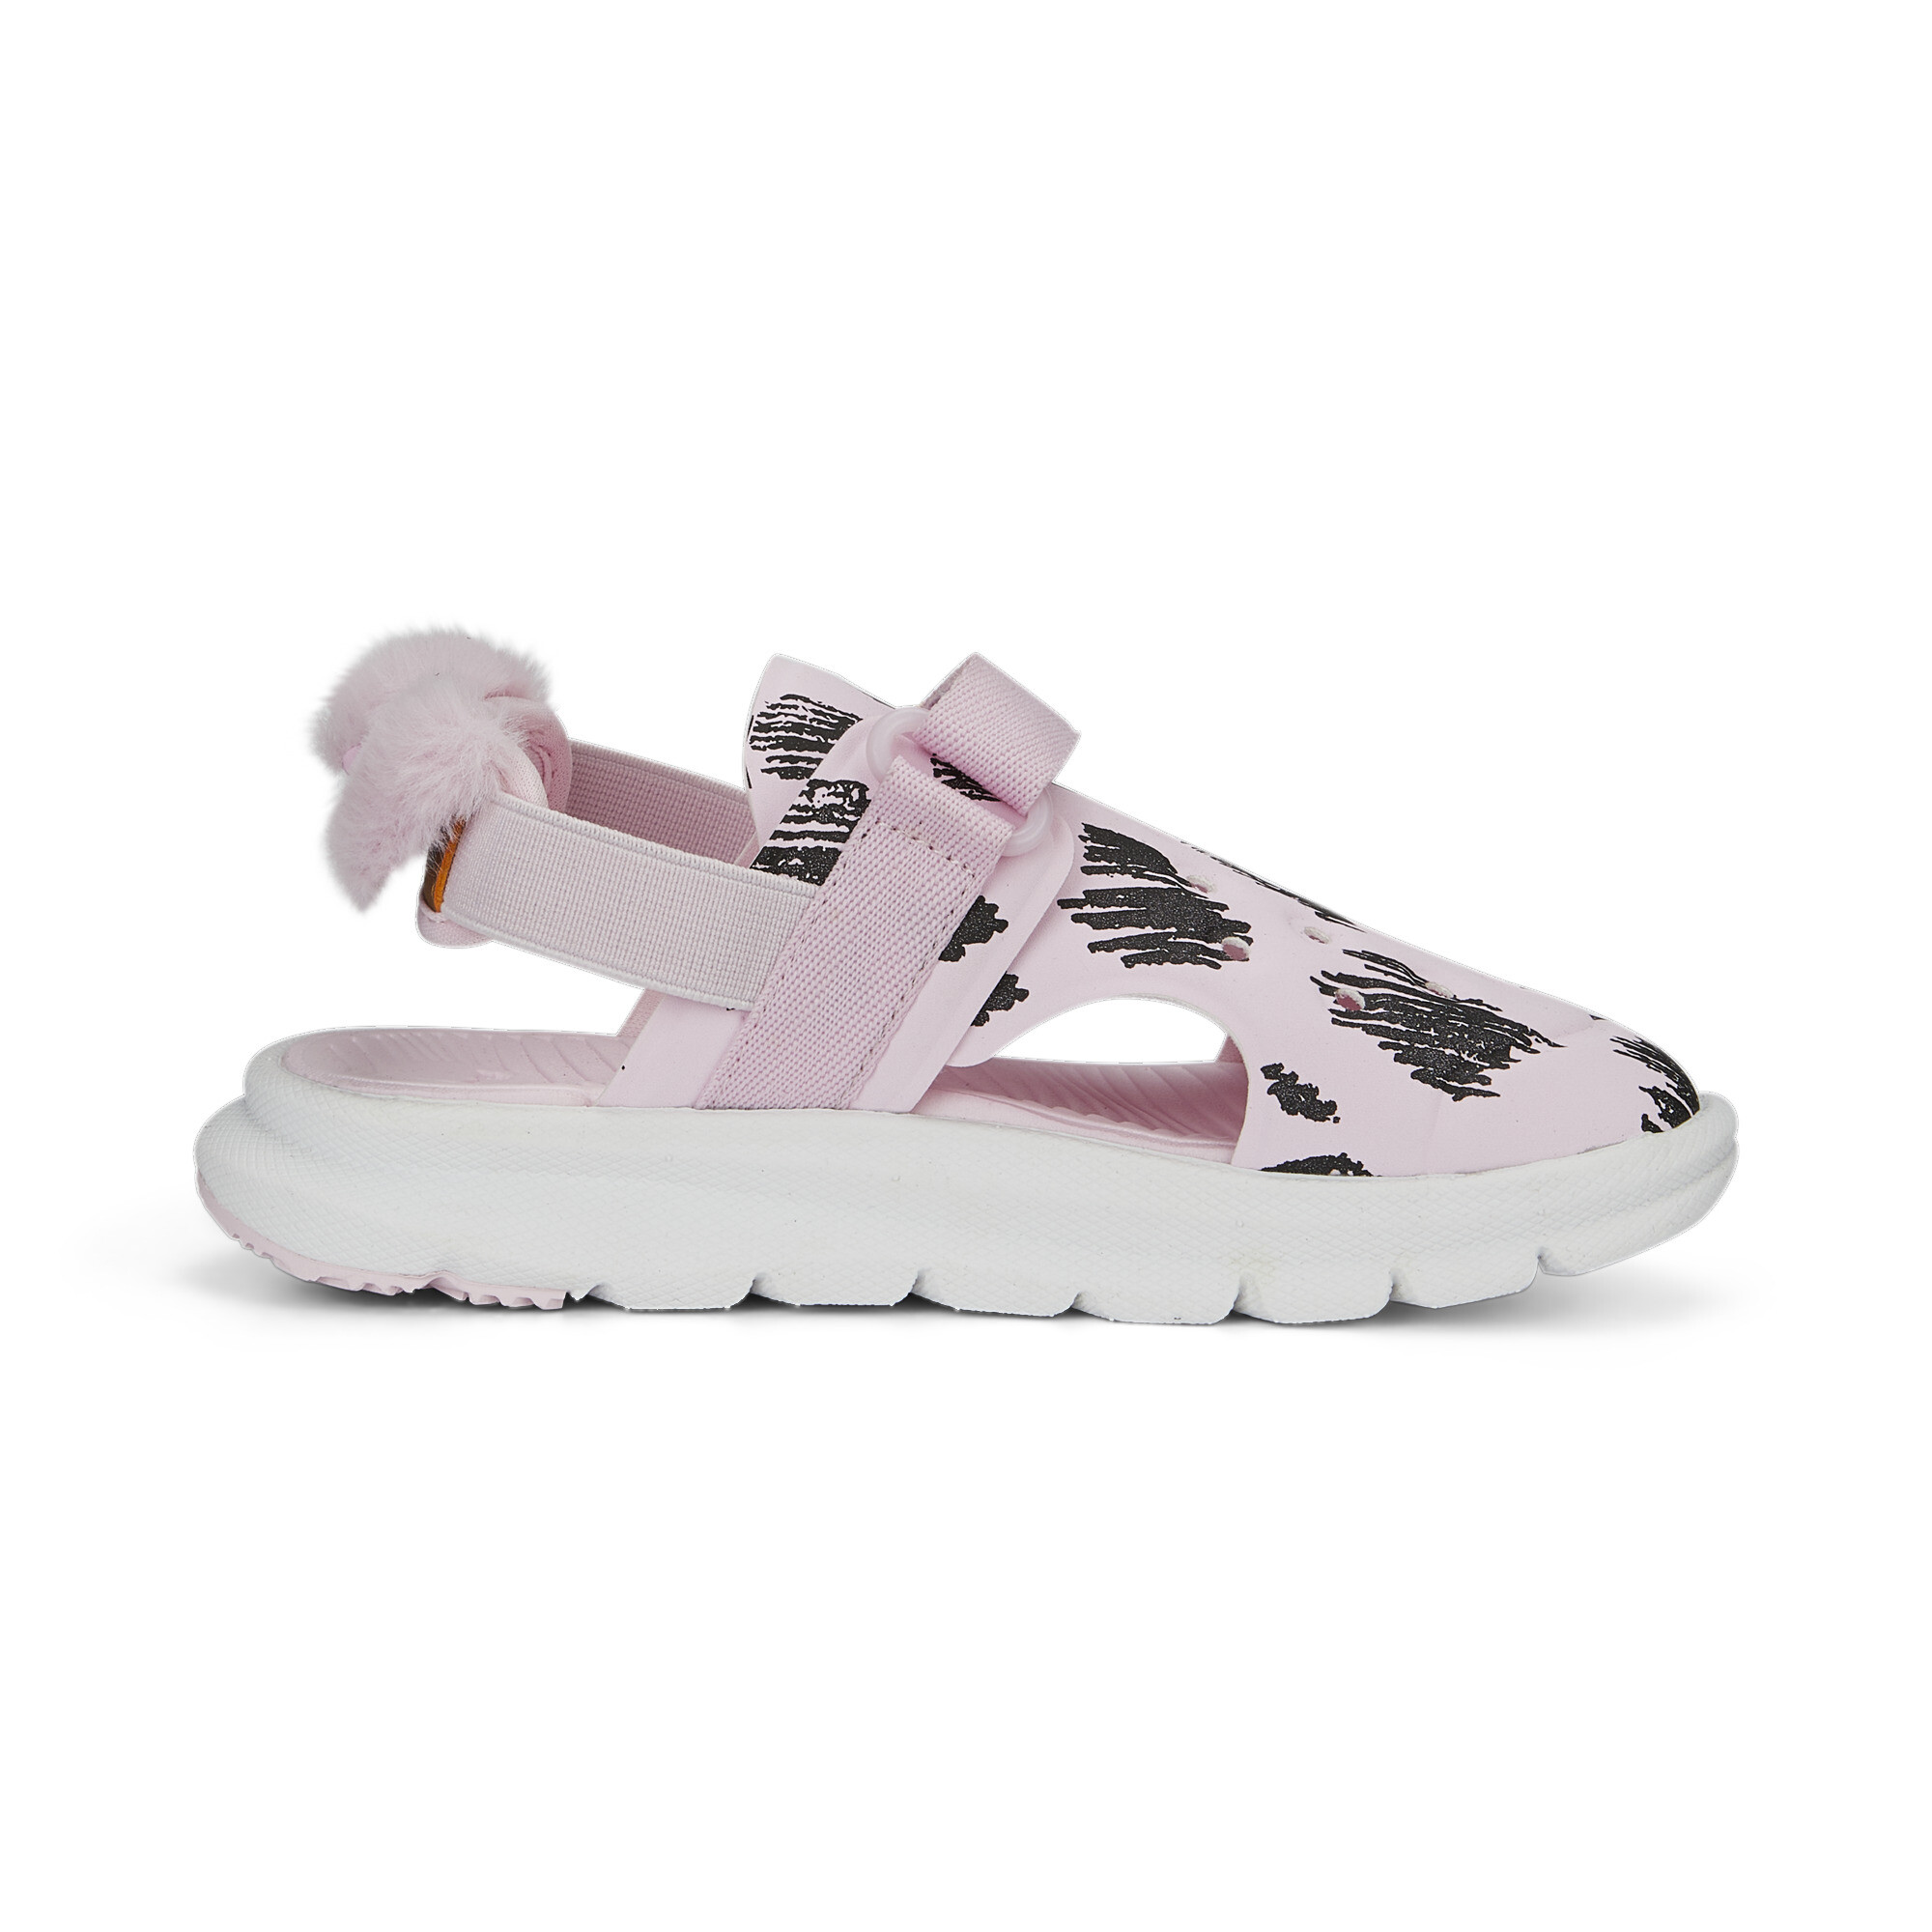 Evolve PUMA Mates Sandals Kids In Pink, Size EU 28